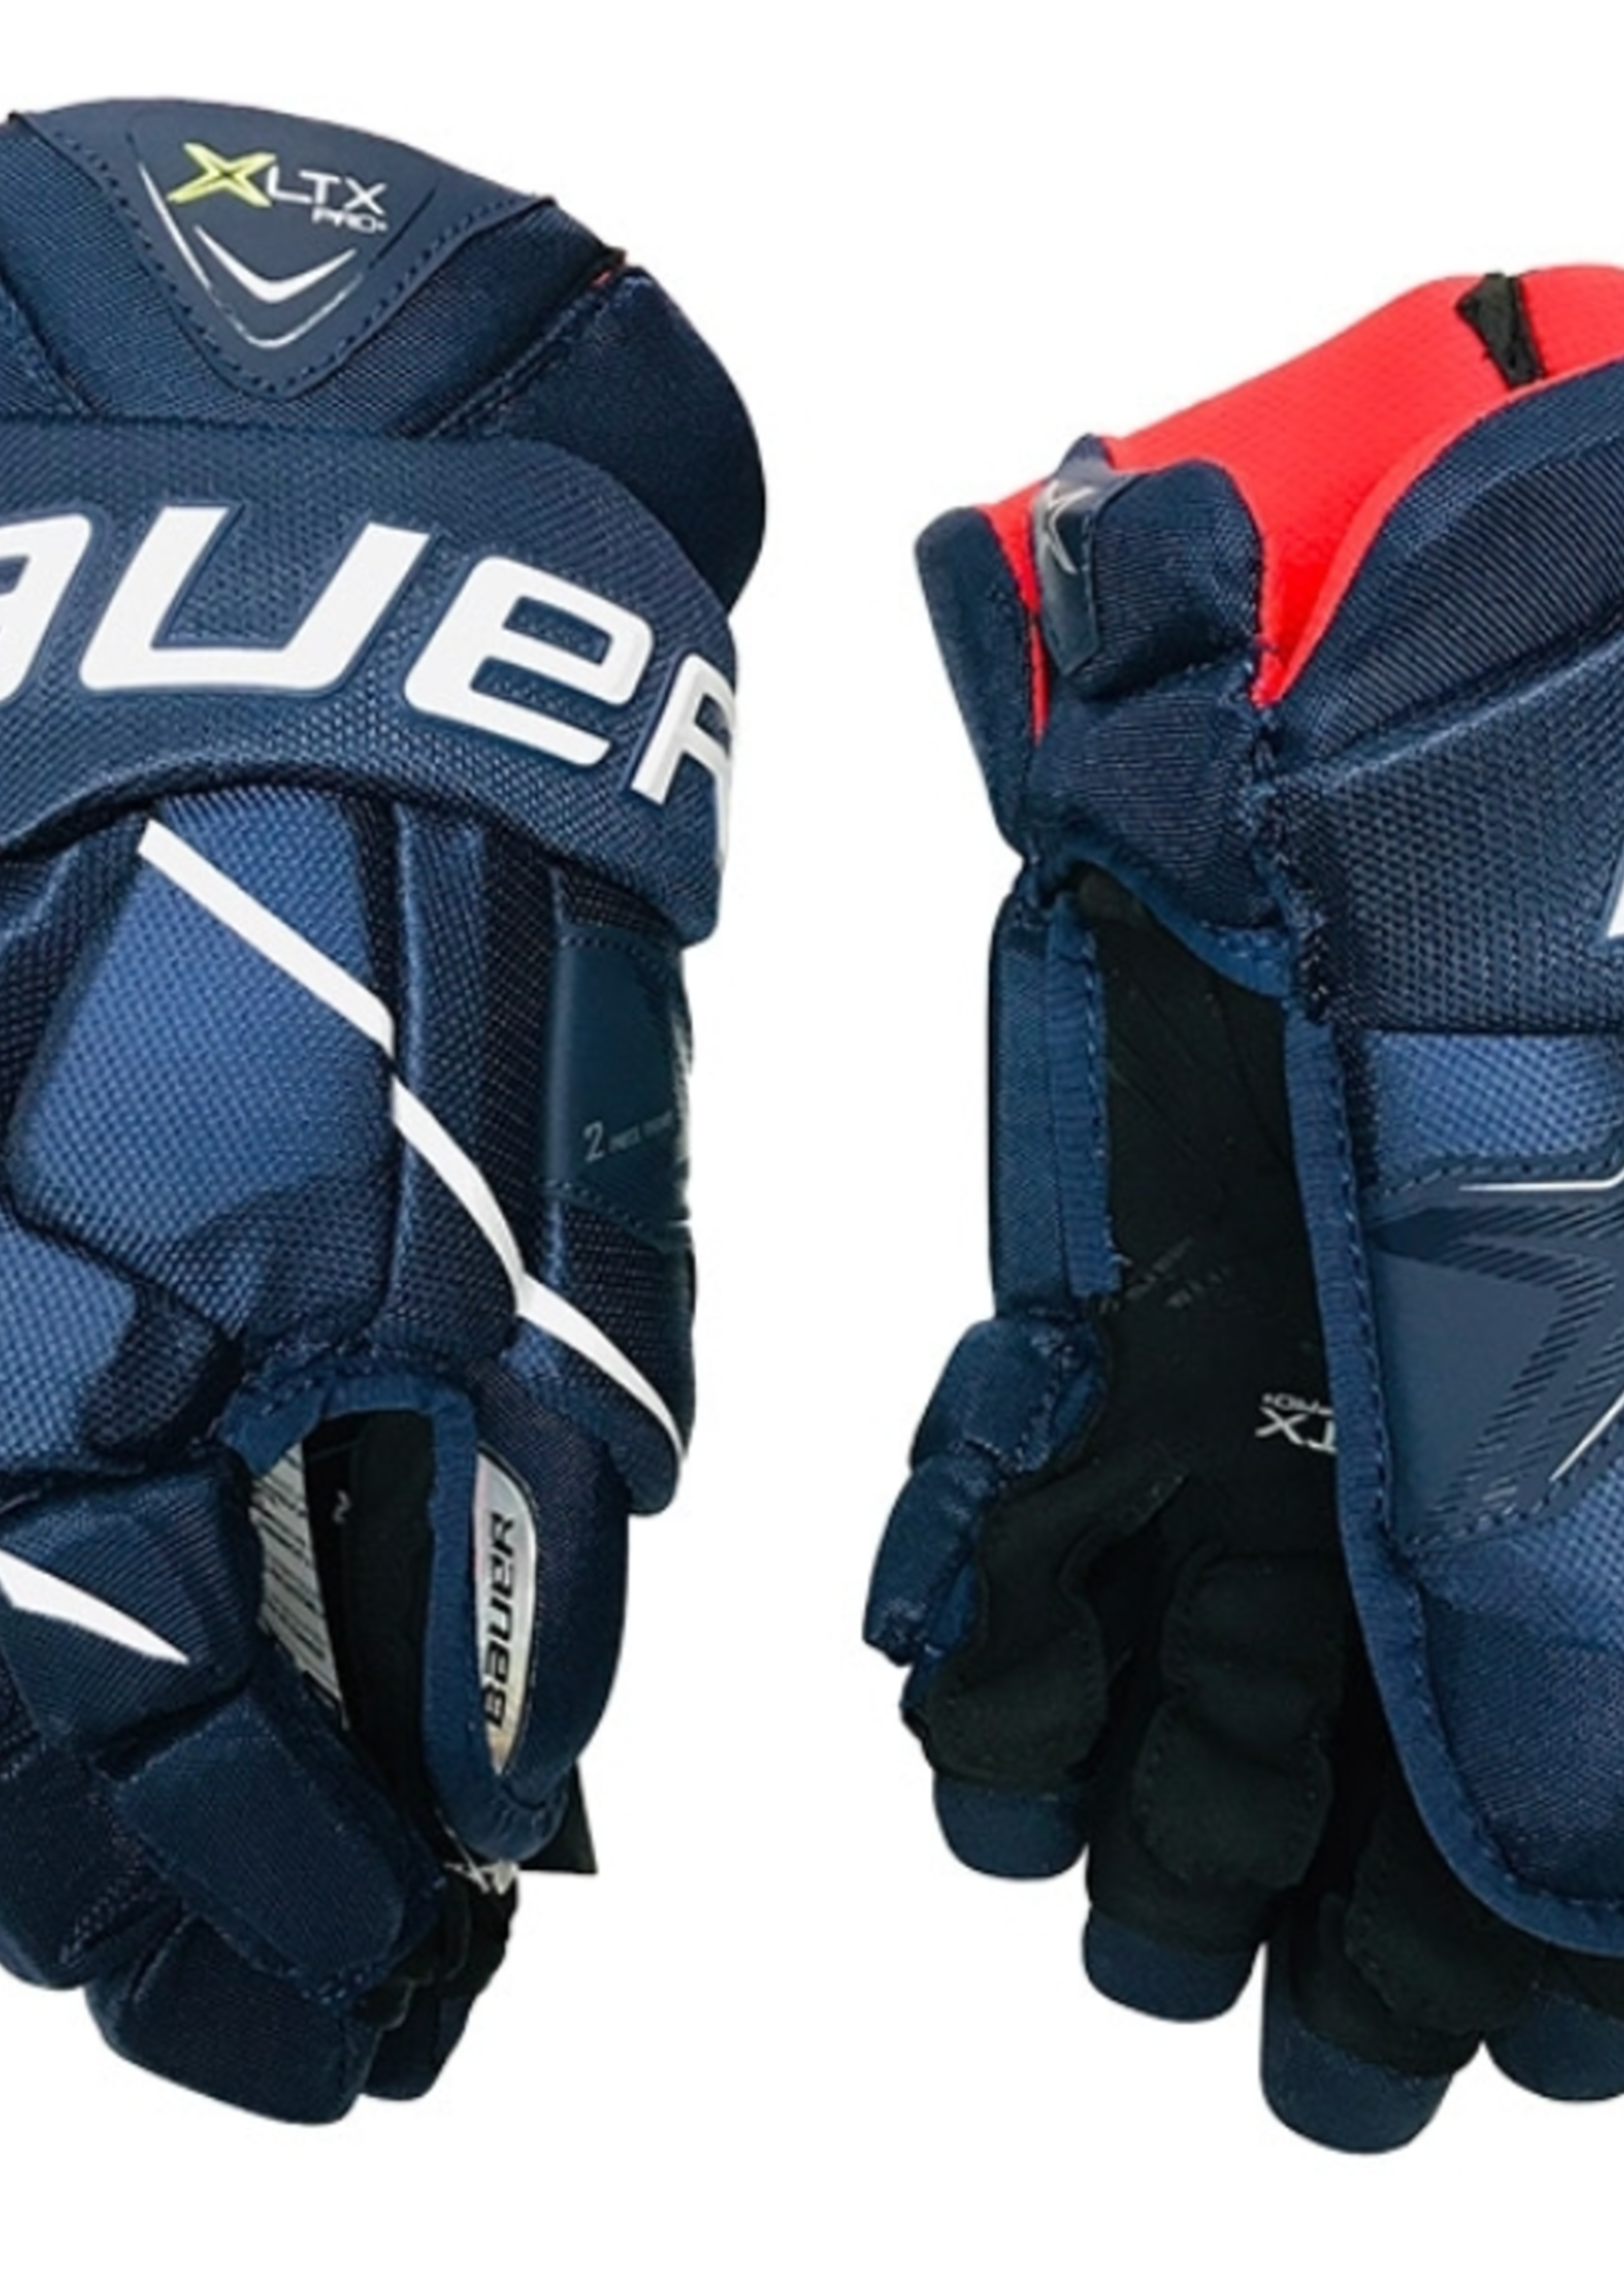 BAU S20 XLTX Pro+ Jr Glove